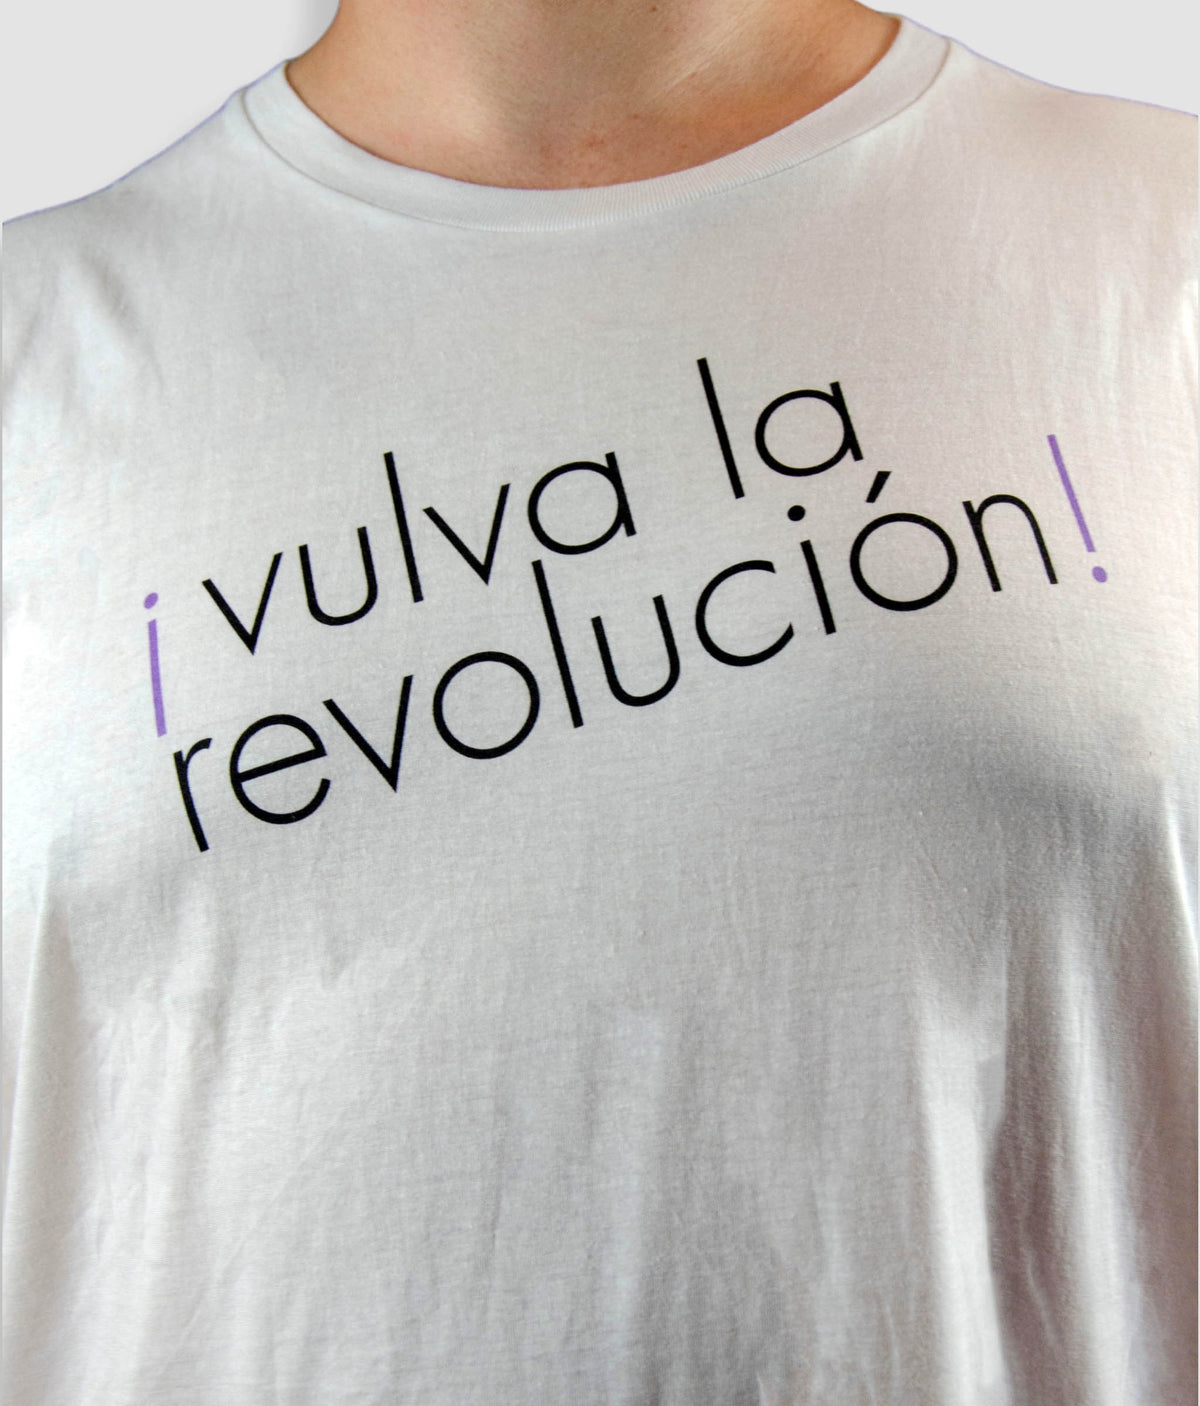 Feminist T Shirt - Vulva La Revolucion, Bold